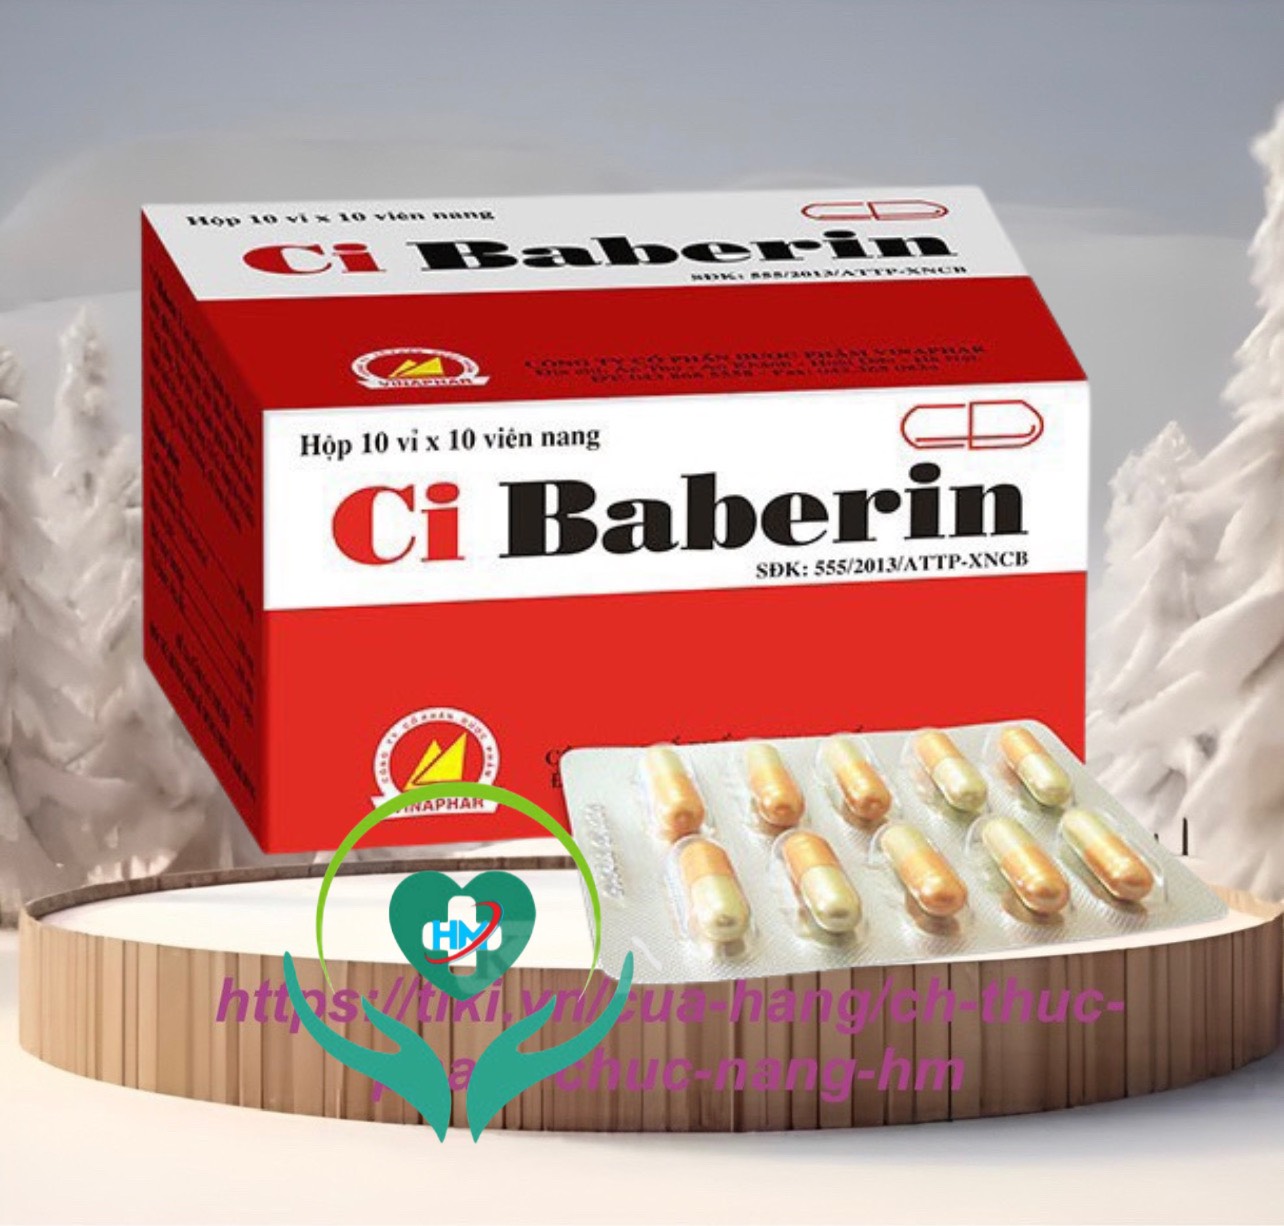 ￼Ci BABERIN Vinaphar - (Hộp 100 viên nang )- Hỗ trợ rối loạn tiêu óa , đầy bụng, chướng hơi ,tiêu chảy